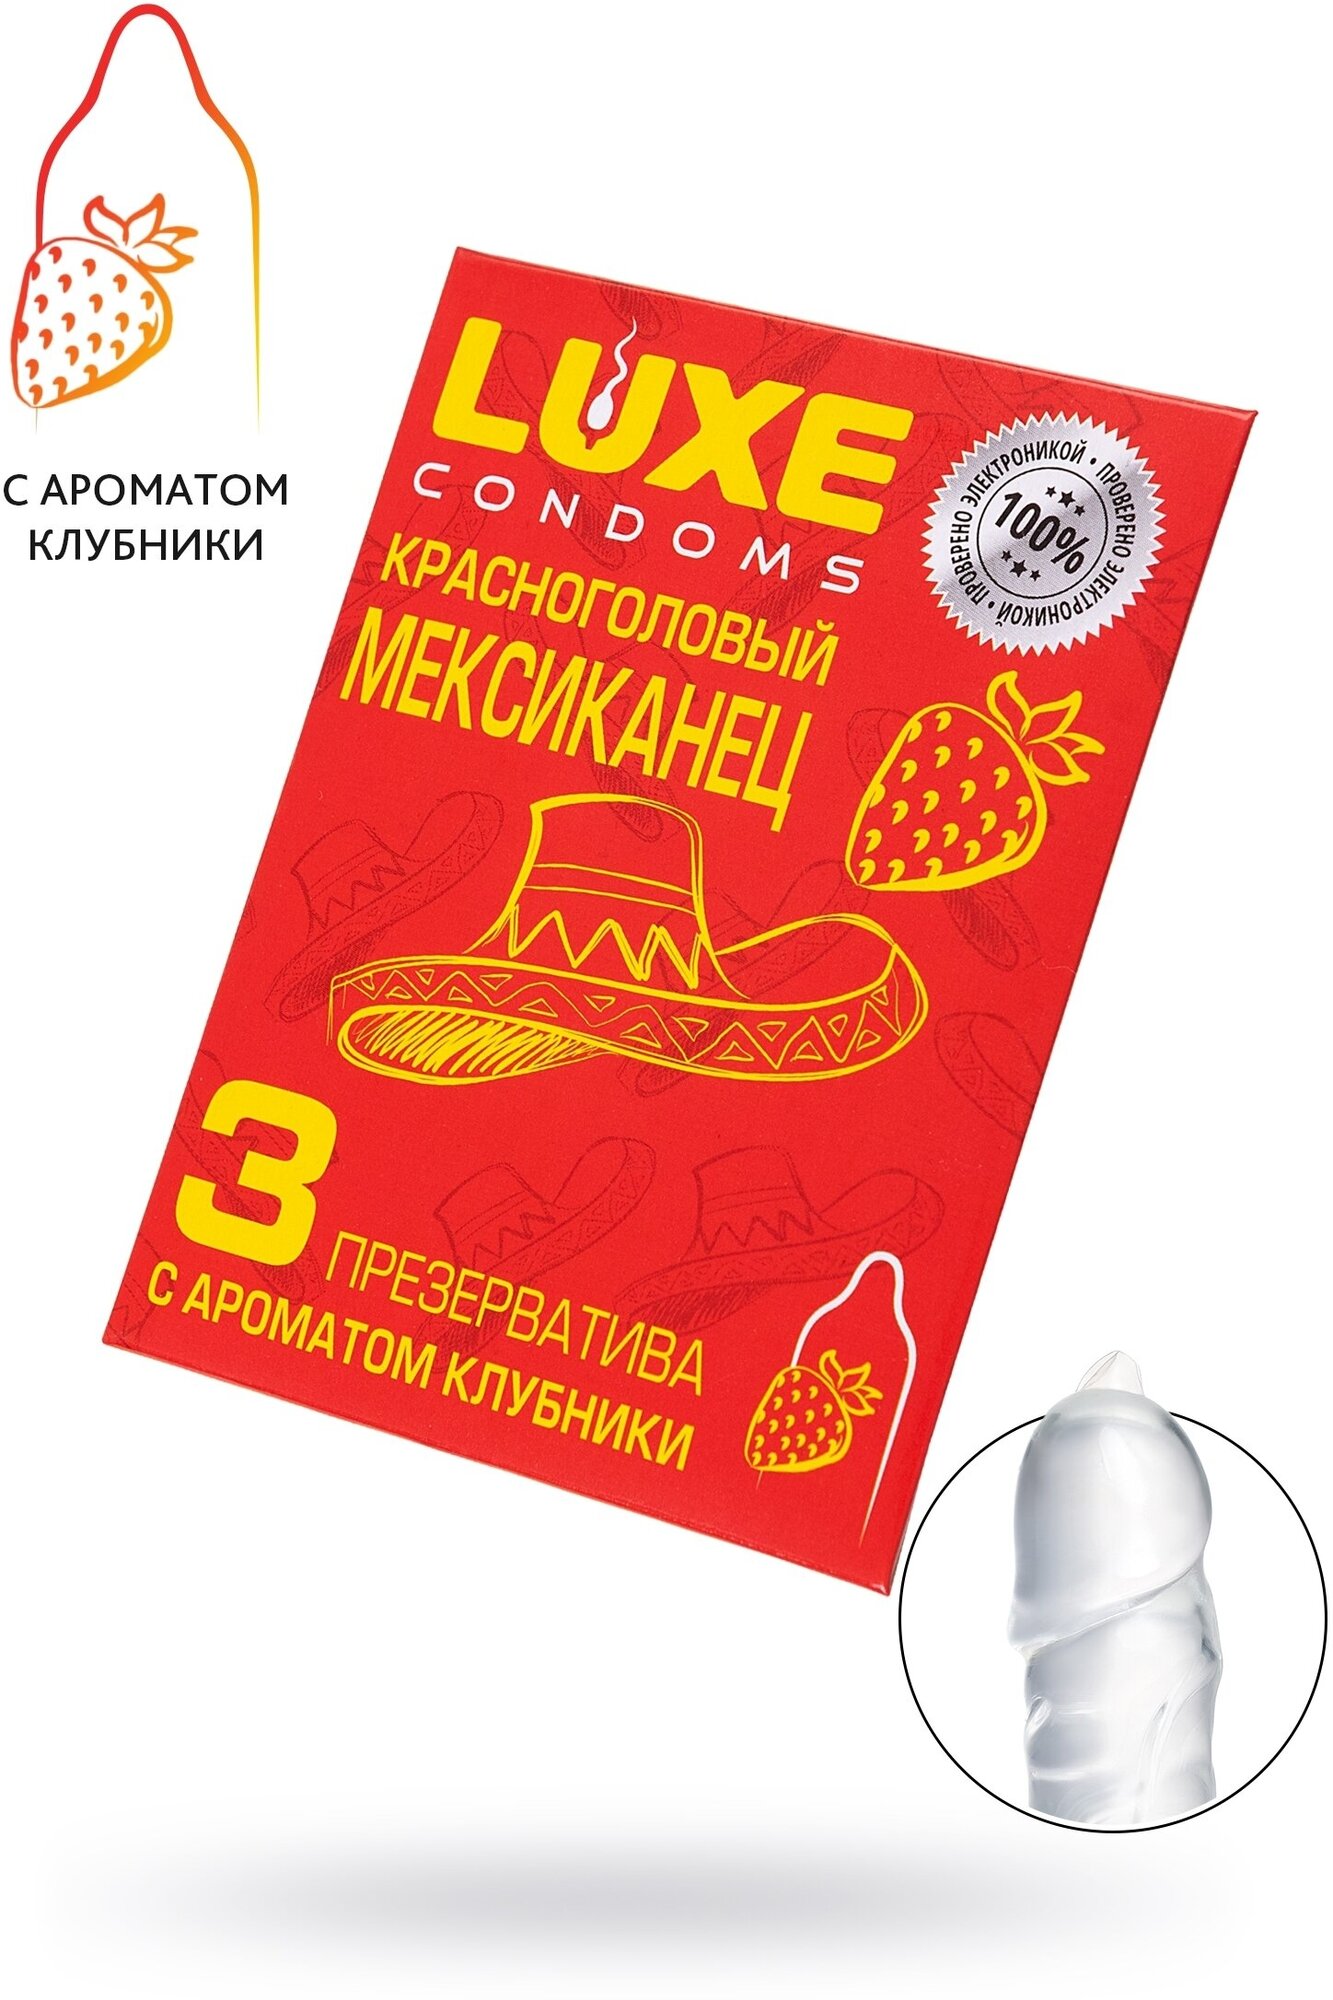 Презервативы Luxe конверт, Красноголовый мексиканец, клубника, 18 см, 3 шт. в упаковке